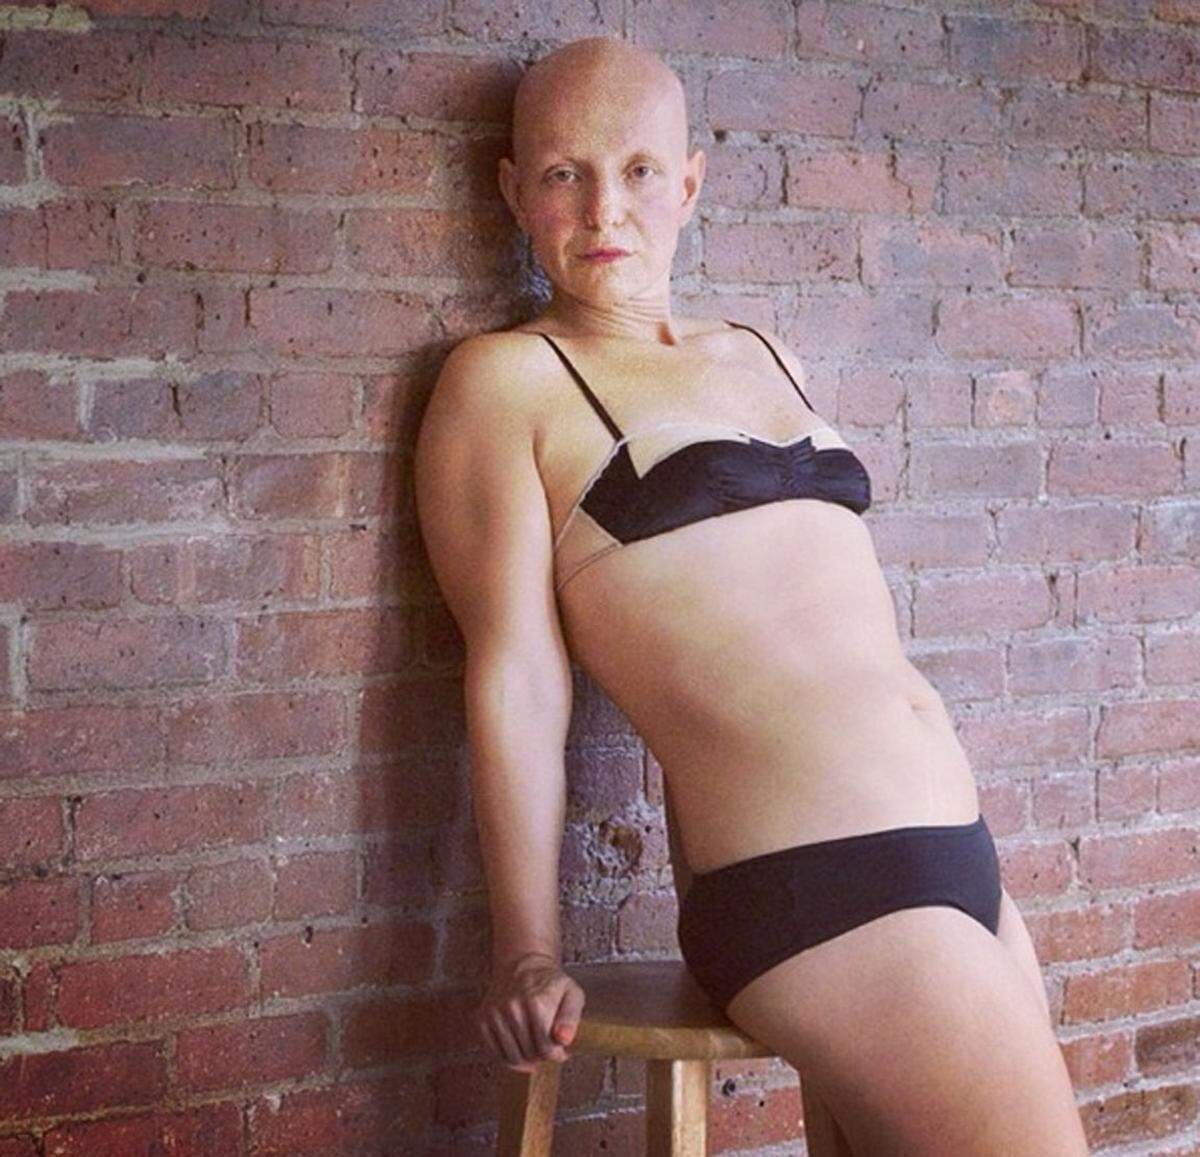 Rachel Fleit verlor mit vier Jahren alle Körperhaare und versuchte das lange Zeit zu verstecken. Mittlerweile hat sie kein Problem mehr, ihr Glatze zu zeigen.